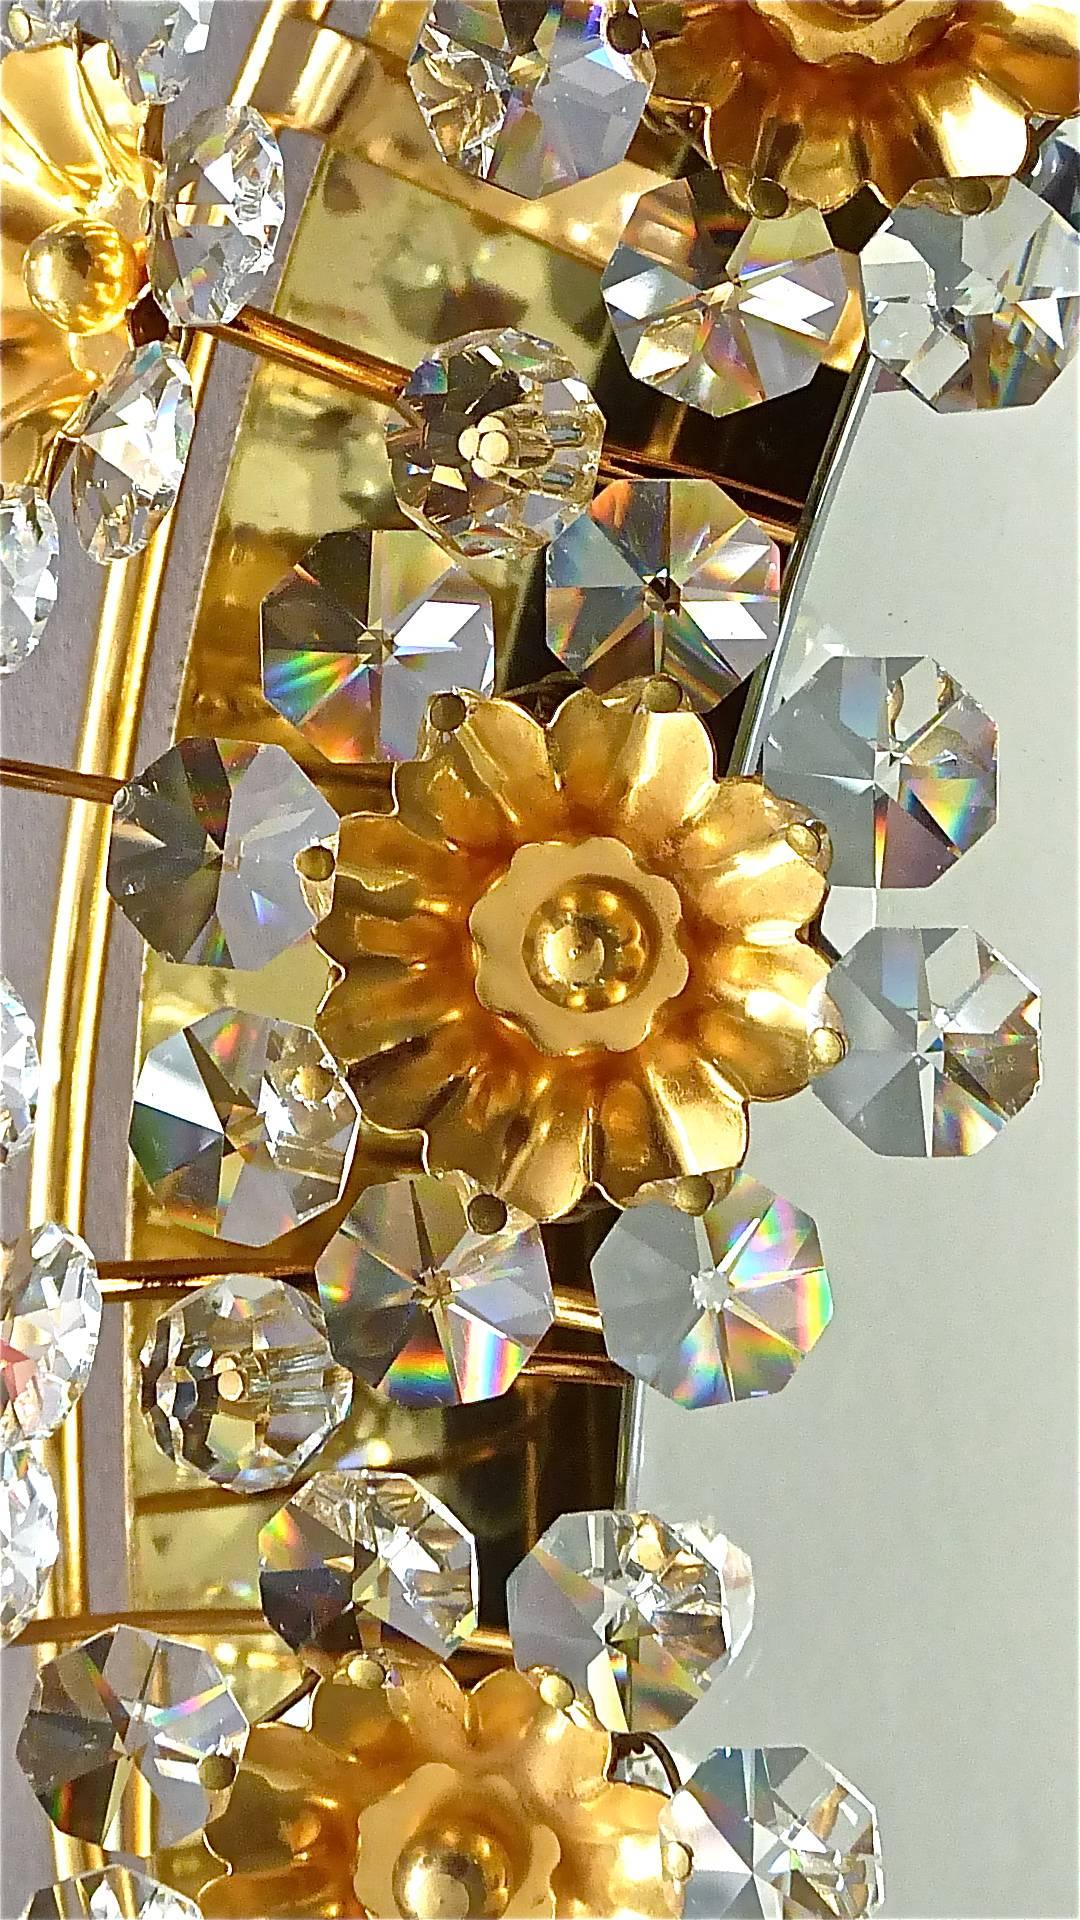 Großer ovaler vergoldeter Messing-Metall-Kristallglas-Wandspiegel von Palwa, Deutschland, ca. 1960-1970, dokumentiert im Palwa-Verkaufskatalog und signiert auf der Rückseite mit Palwa-Firmenlabel mit Modellnummer. Der Rahmen ist mit vielen schönen,